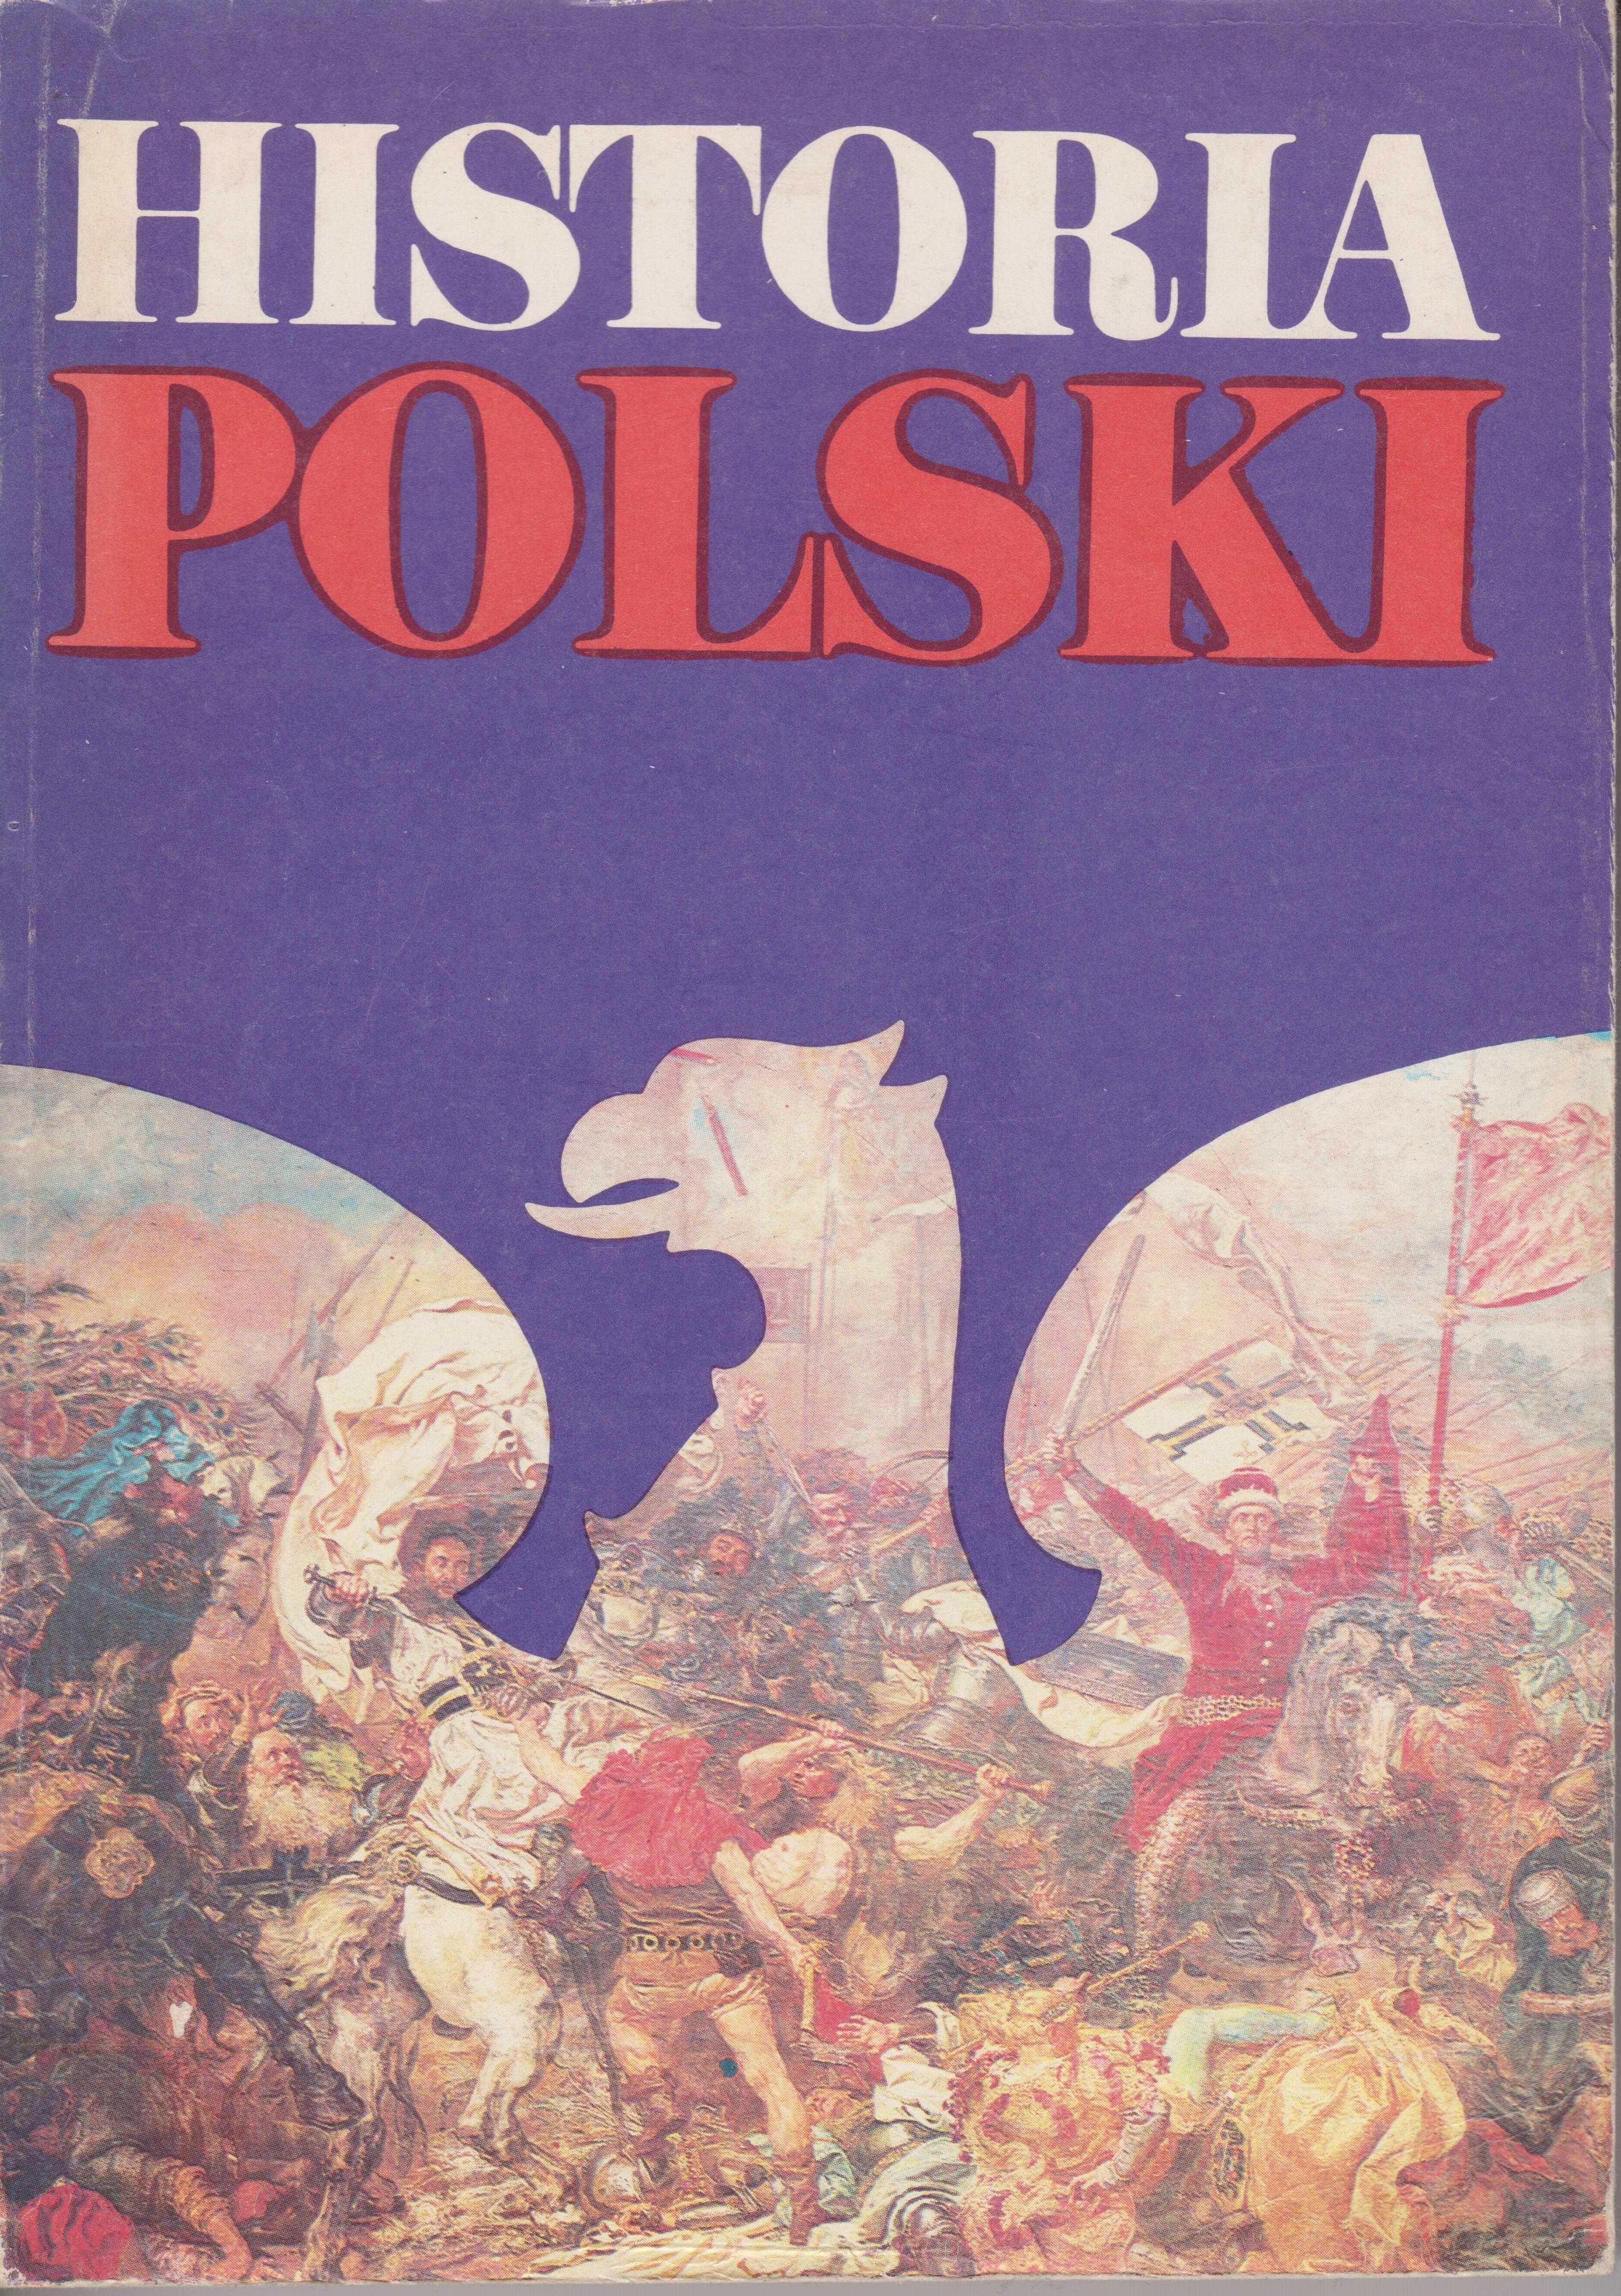 Historia polski w 4 tomach